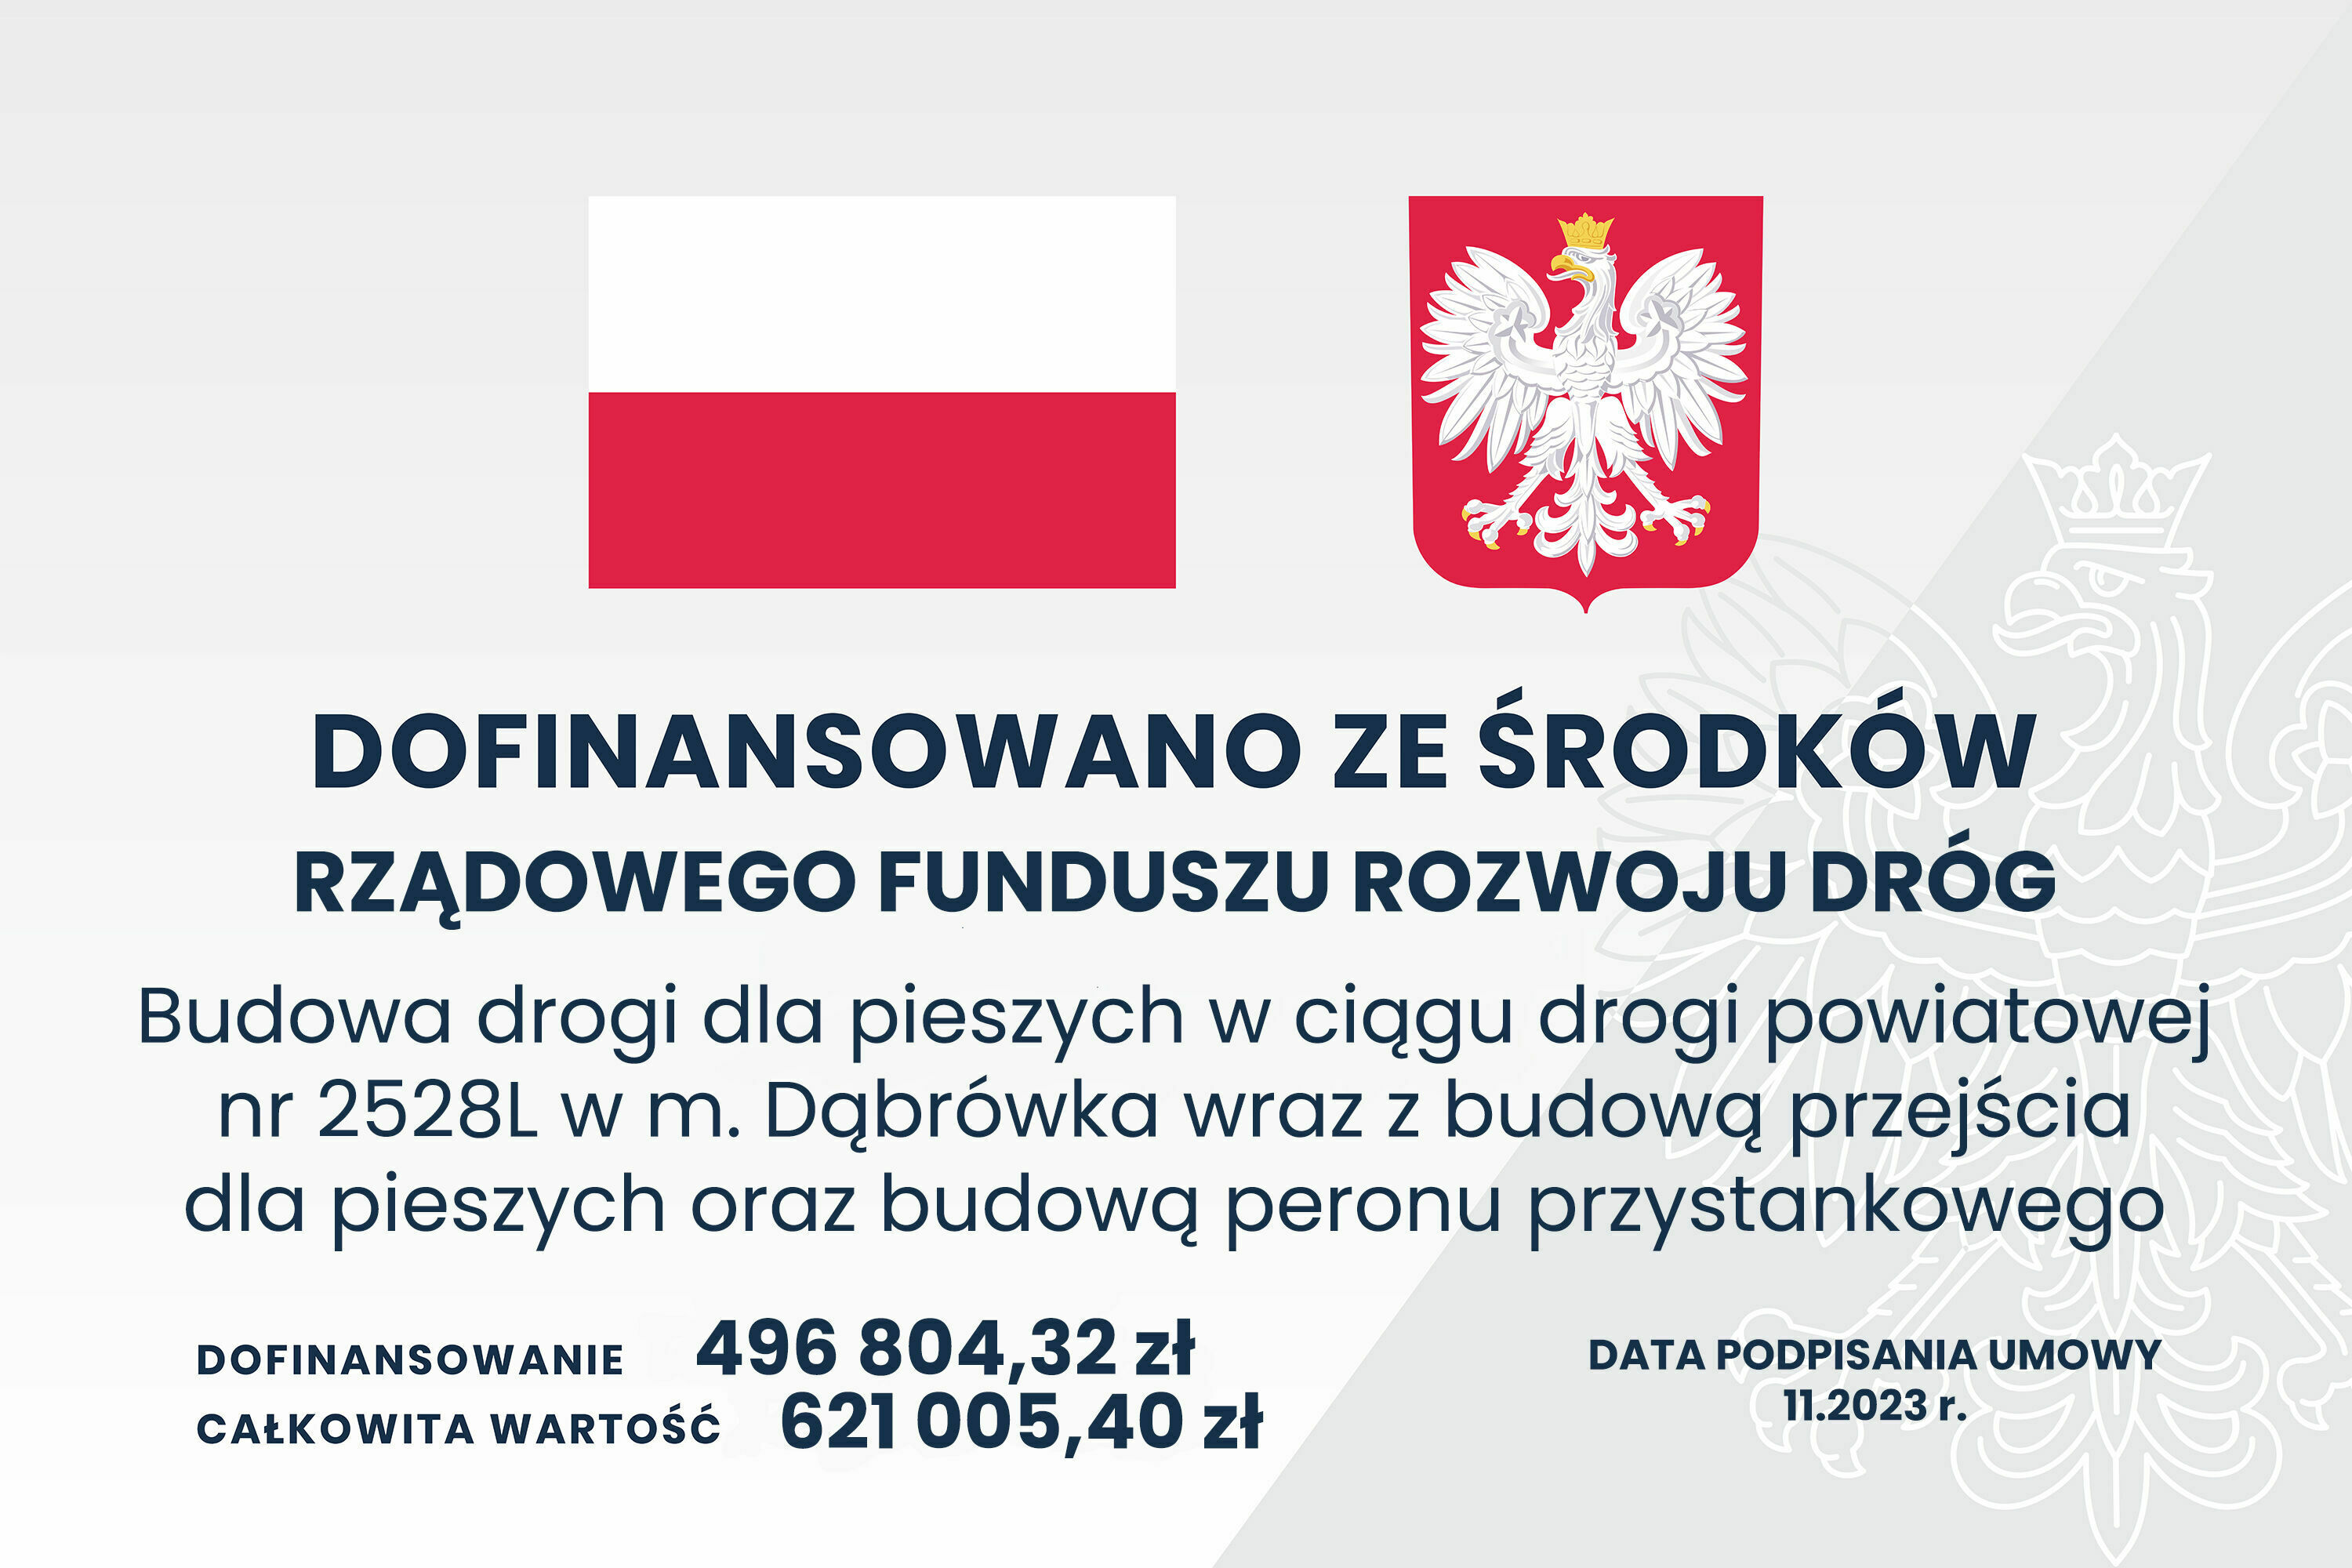 Zdjęcie prezentuje grafikę informacyjną z polską flagą i godłem, tekst o dofinansowaniu budowy drogi z rządowego funduszu oraz kwoty i datę.